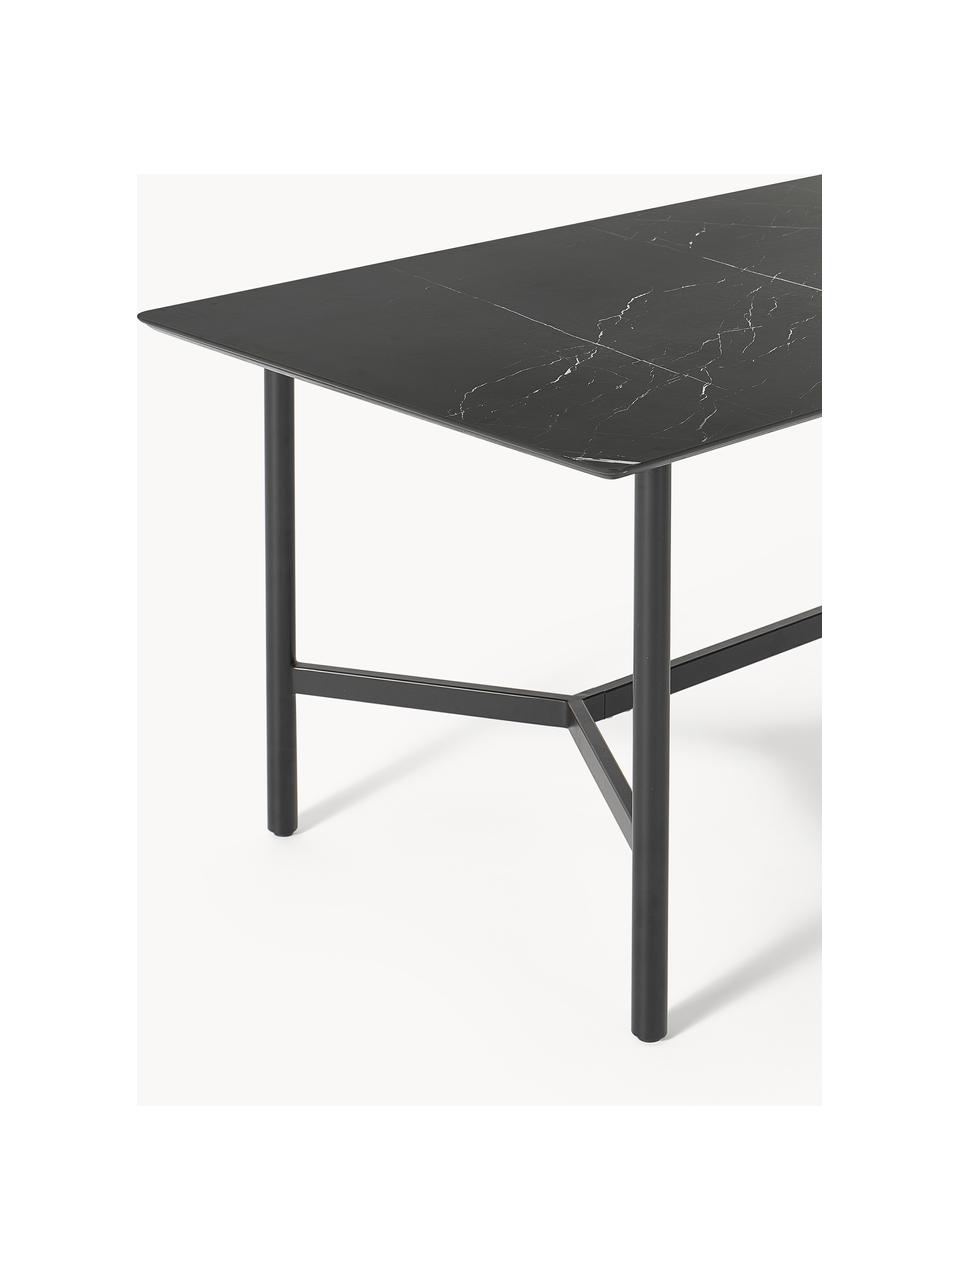 Zahradní stůl v mramorovém vzhledu Connor, Mramorový černý vzhled, černá, Š 160 cm, H 85 cm